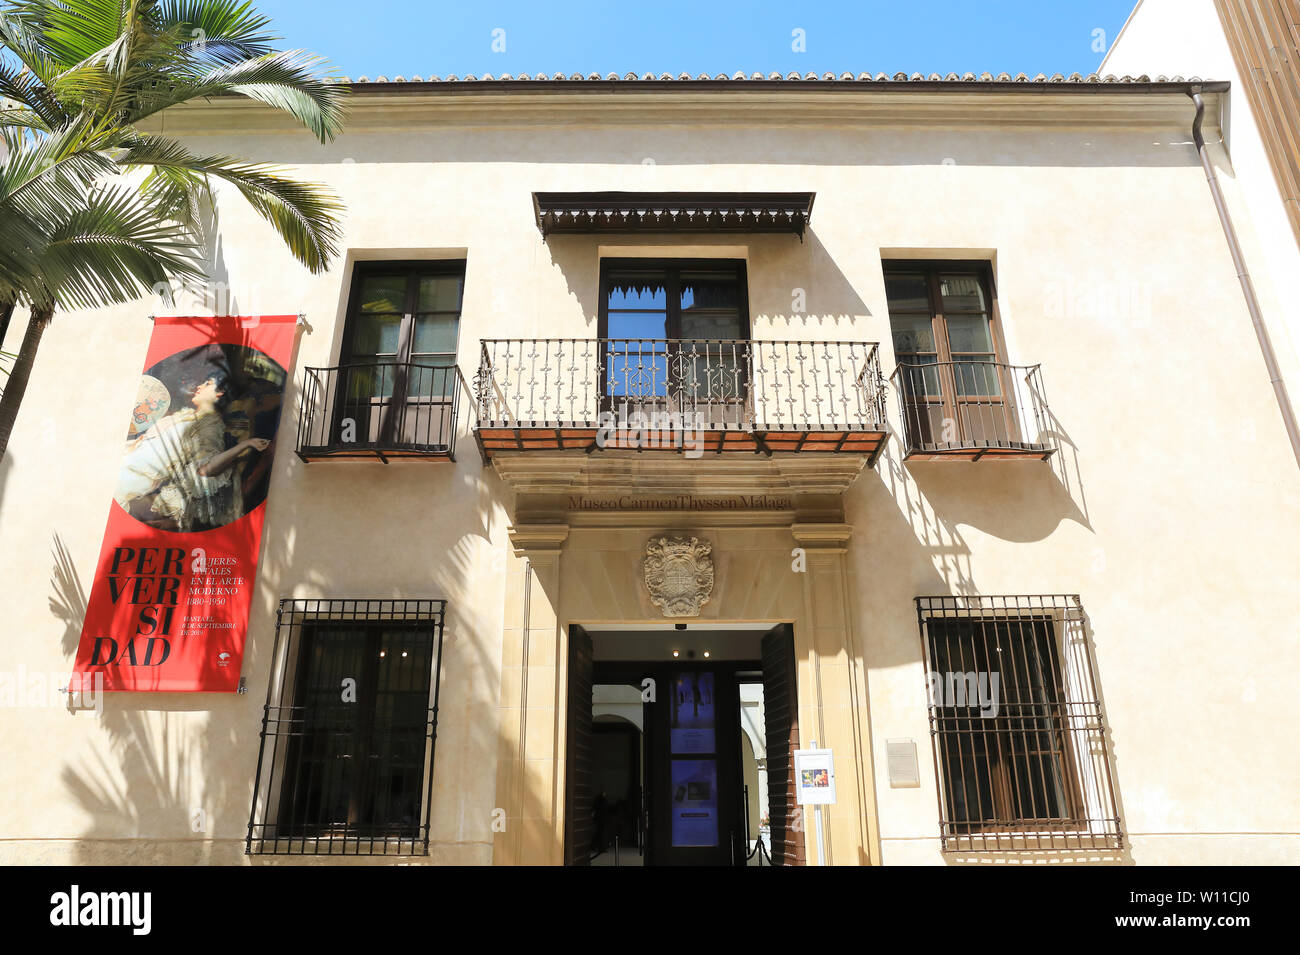 Il Museo Carmen Thyssen, una galleria d'arte mostra principalmente arte spagnola, nella città di Malaga, in Spagna, Europa Foto Stock